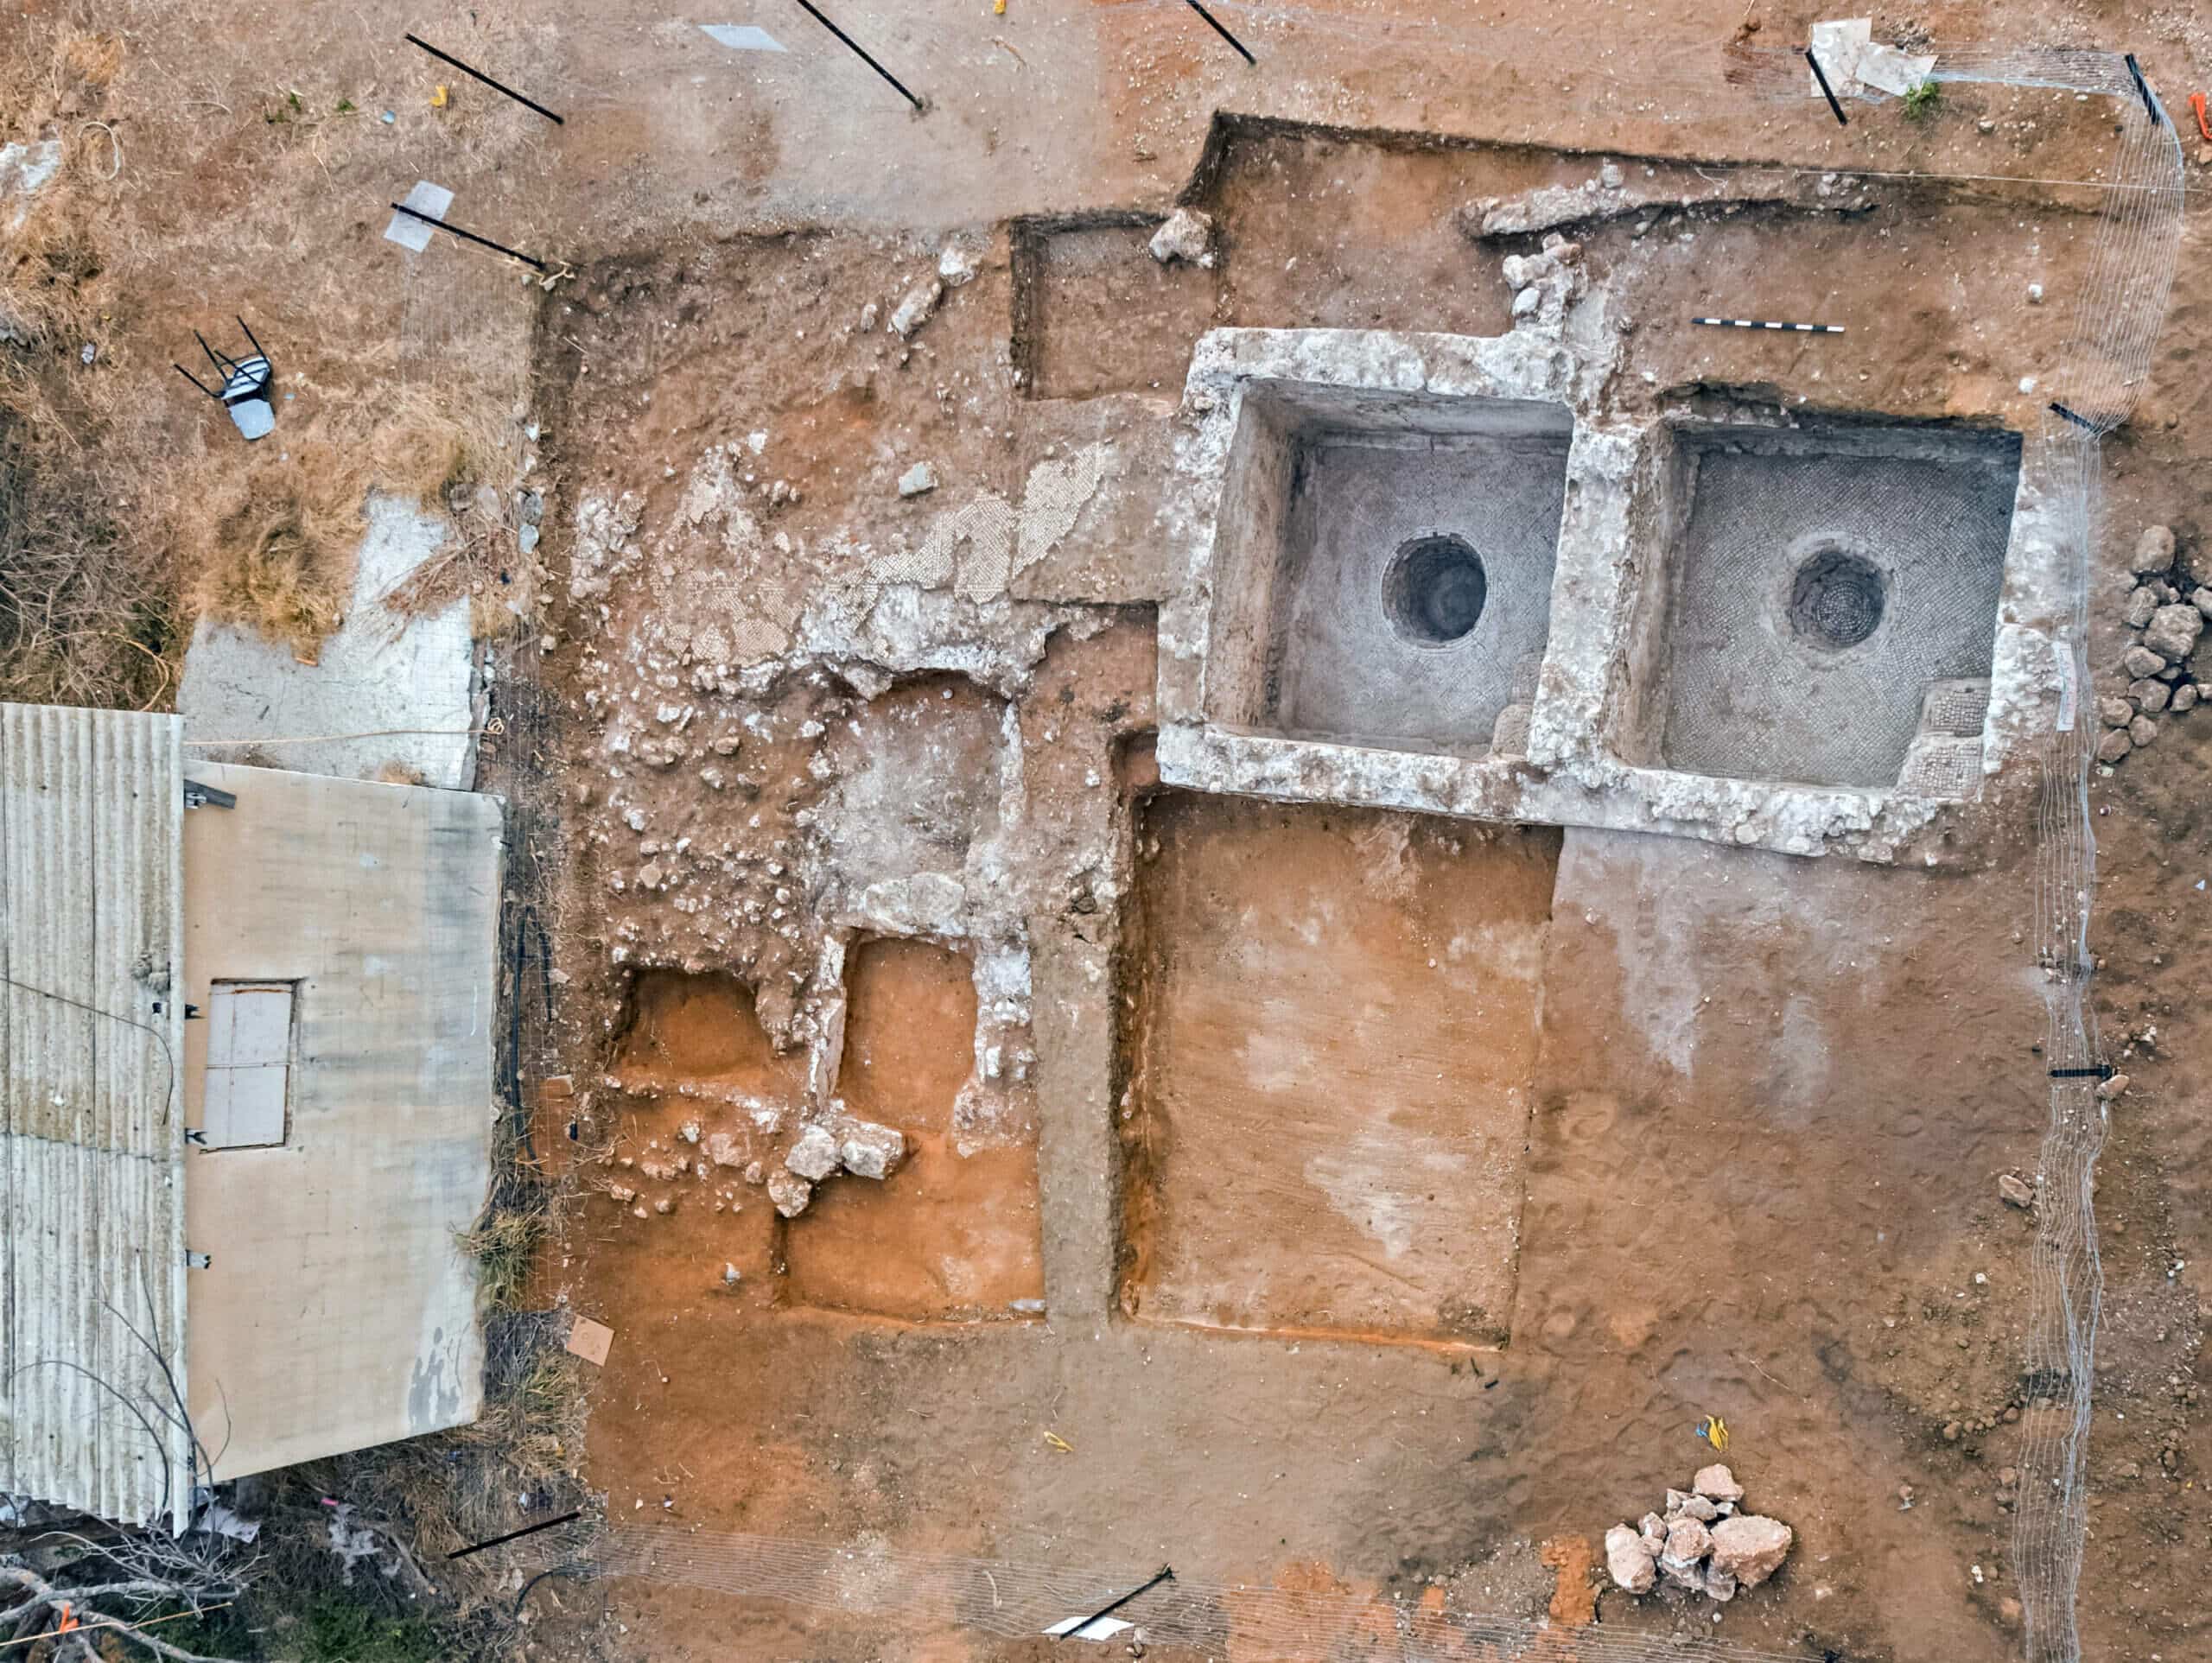 صورة جوية لجيث في الحفريات الأثرية التابعة لسلطة الآثار في رمات هشارون. الصورة جمعتها هيئة الآثار